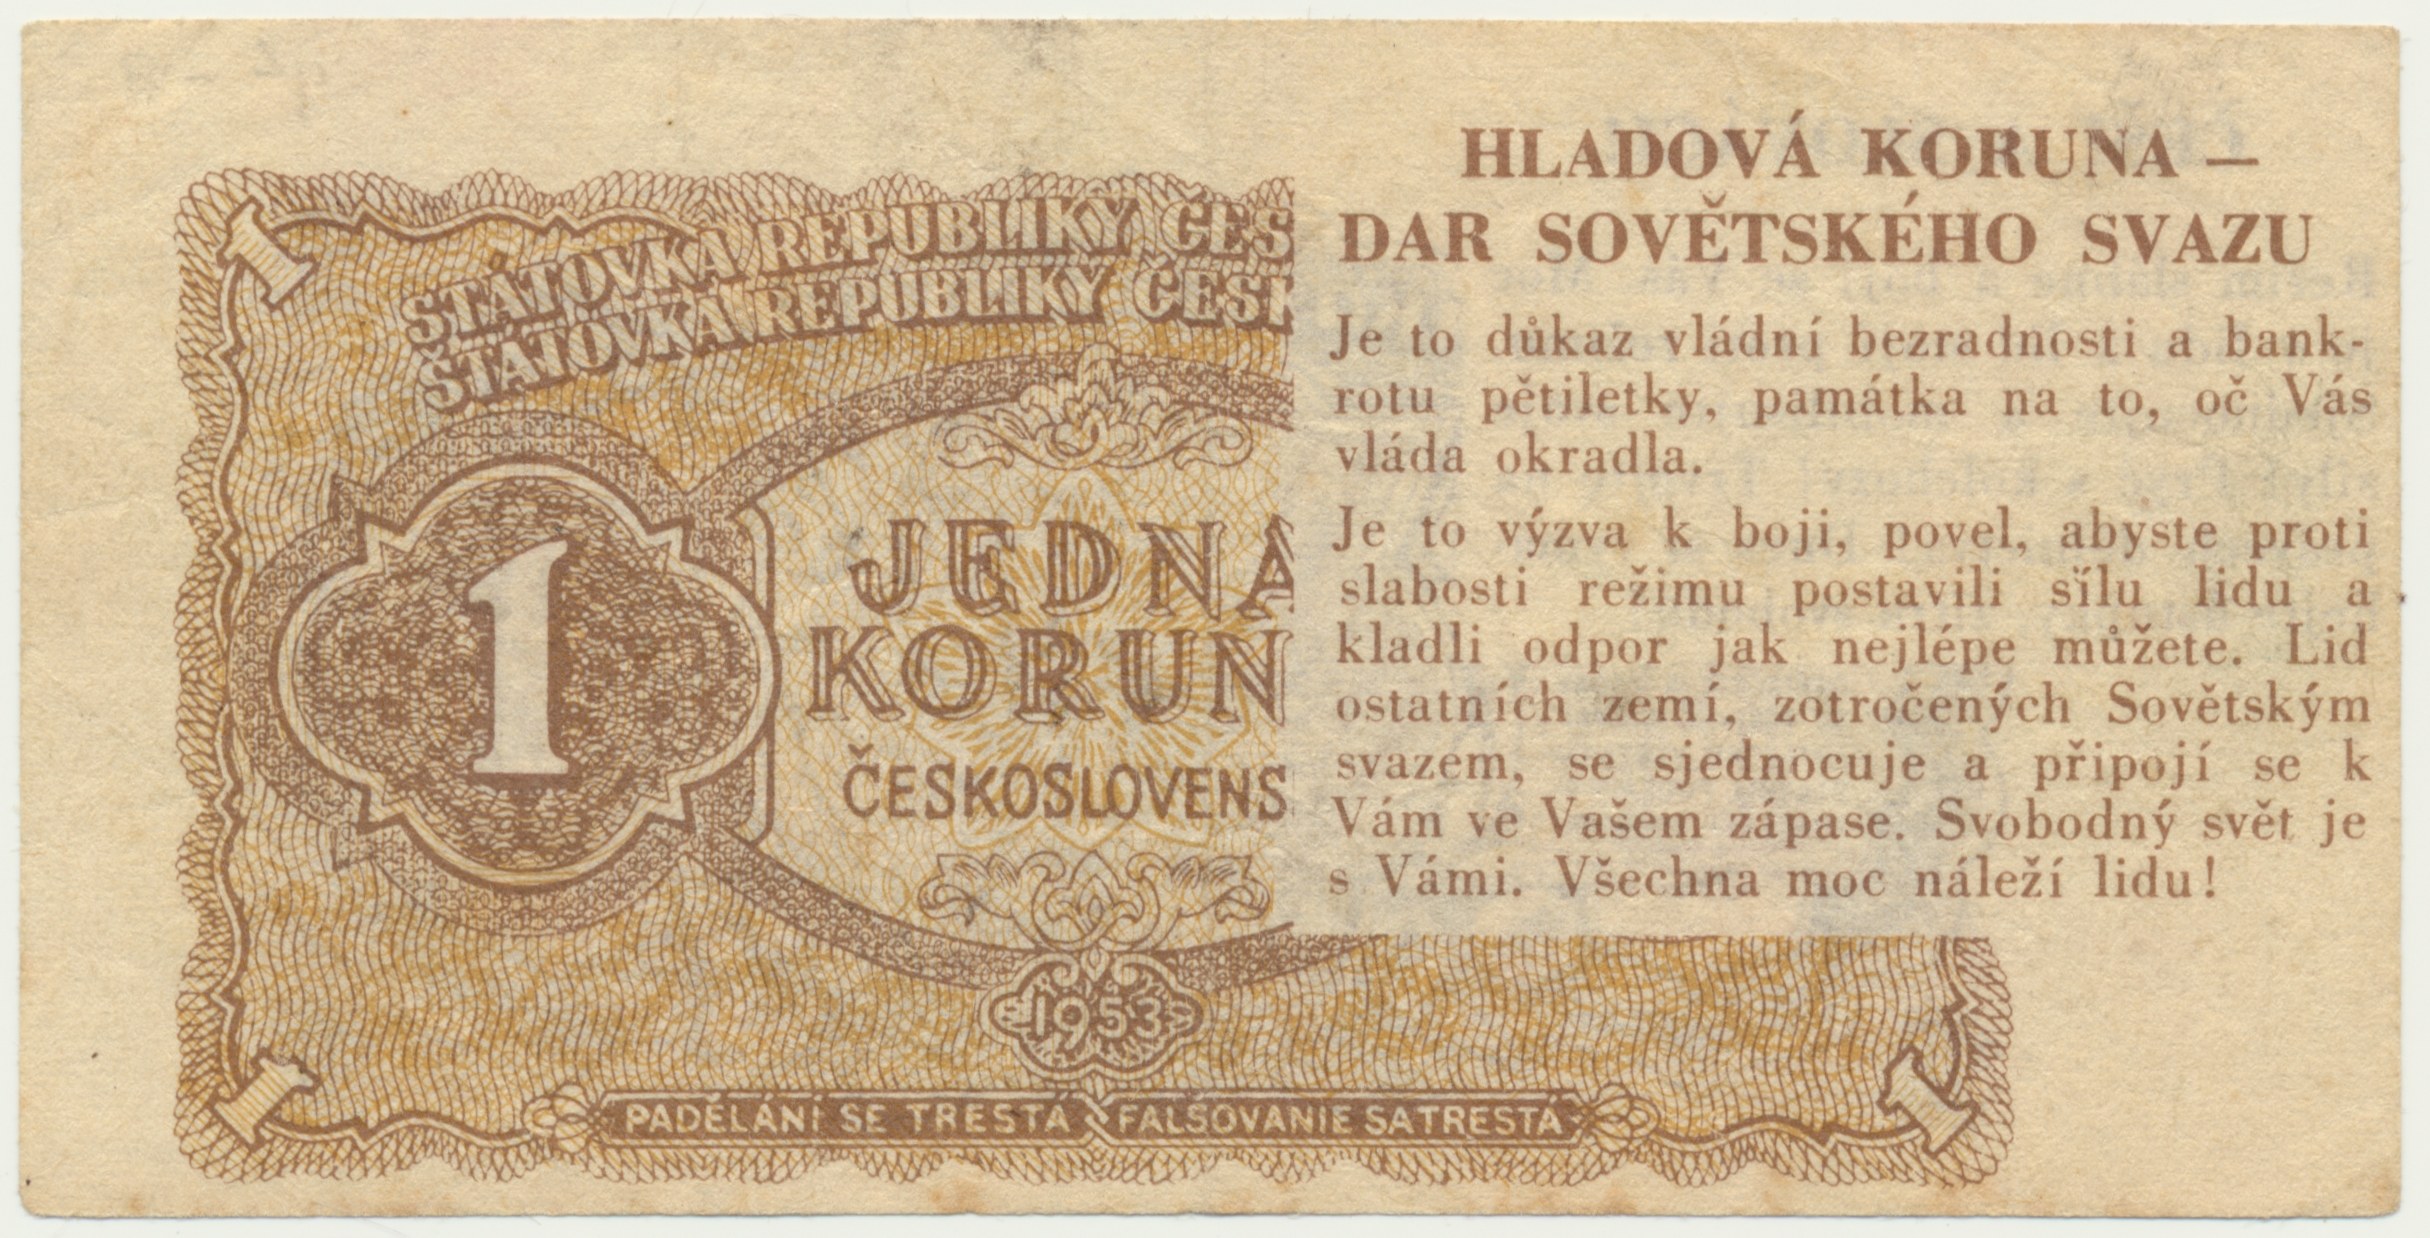 Денежная реформа 1953. Чехословакия 1 крона 1953 г.. Монеты Чехословакии в 1953 году. Чехословакия денежная реформа. Первая банкнота в Европе была отпечатана.